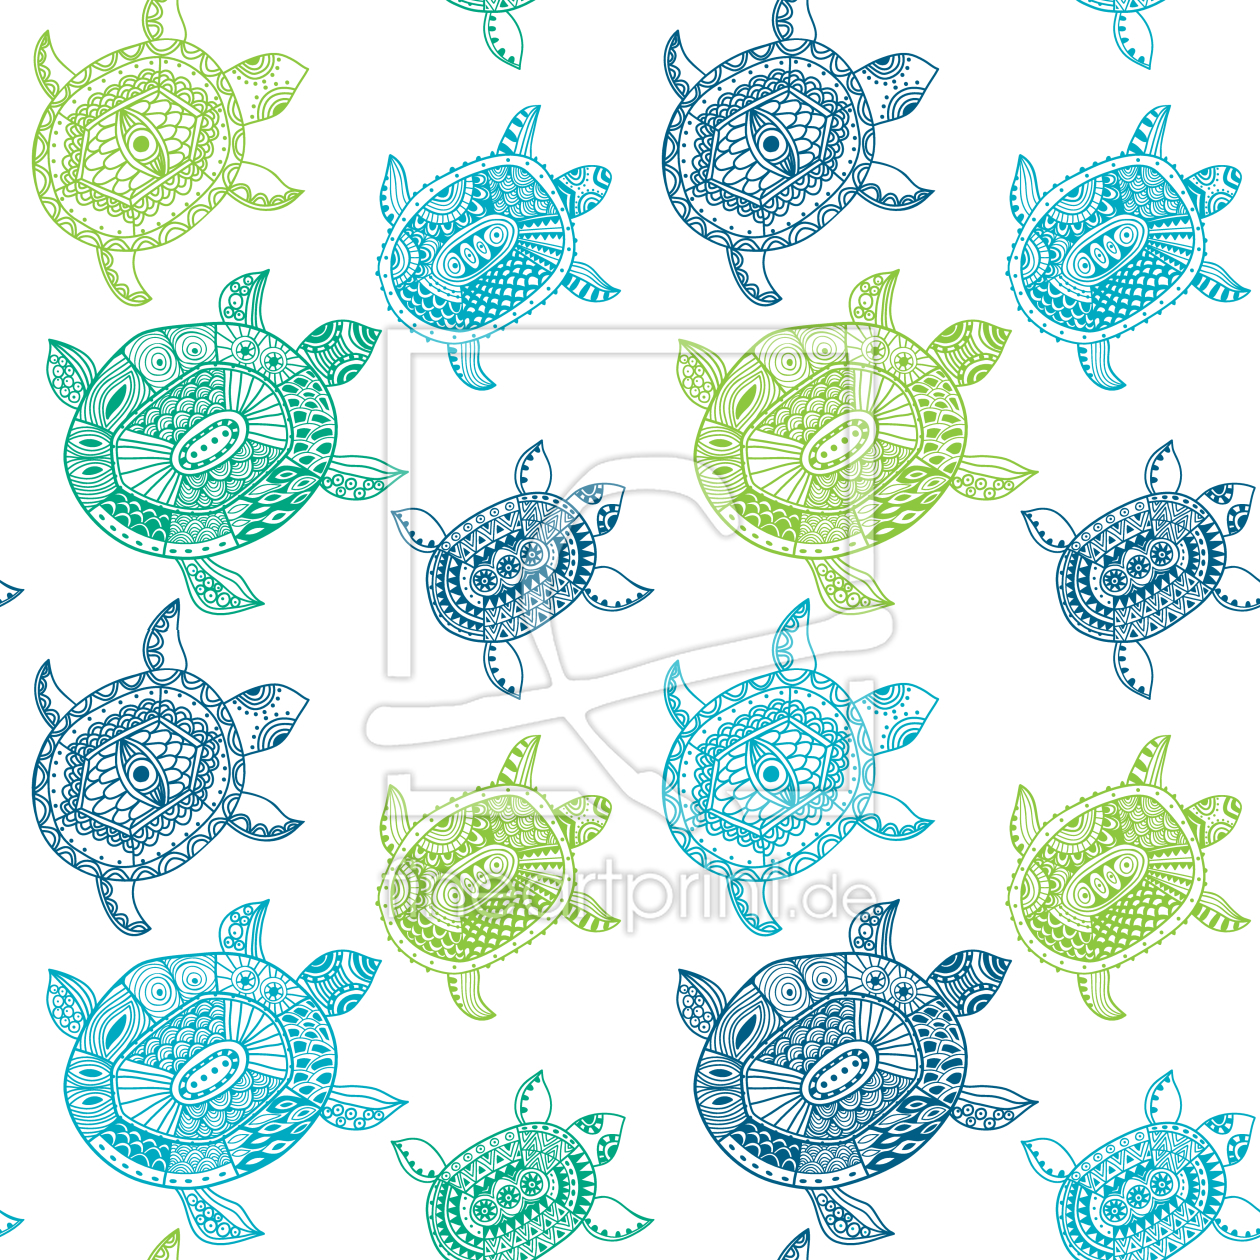 Bild-Nr.: 9002265 Die Fantastische Reise Der Meeresschildkröten erstellt von patterndesigns-com